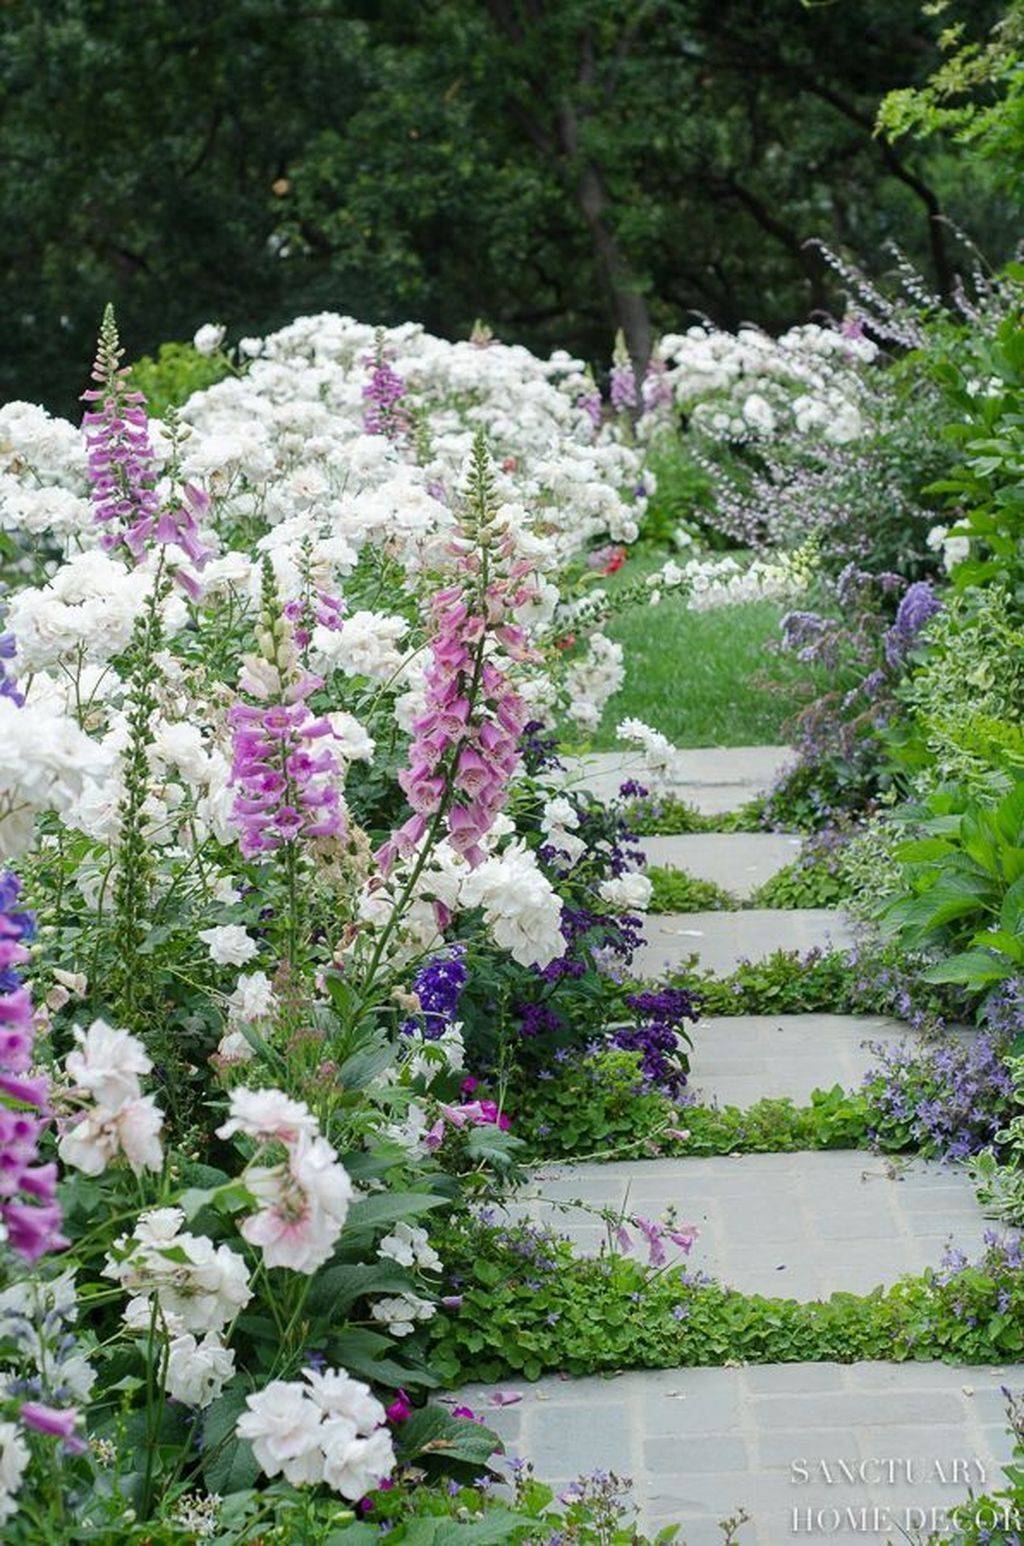 My Dreams Romantic Garden Designs